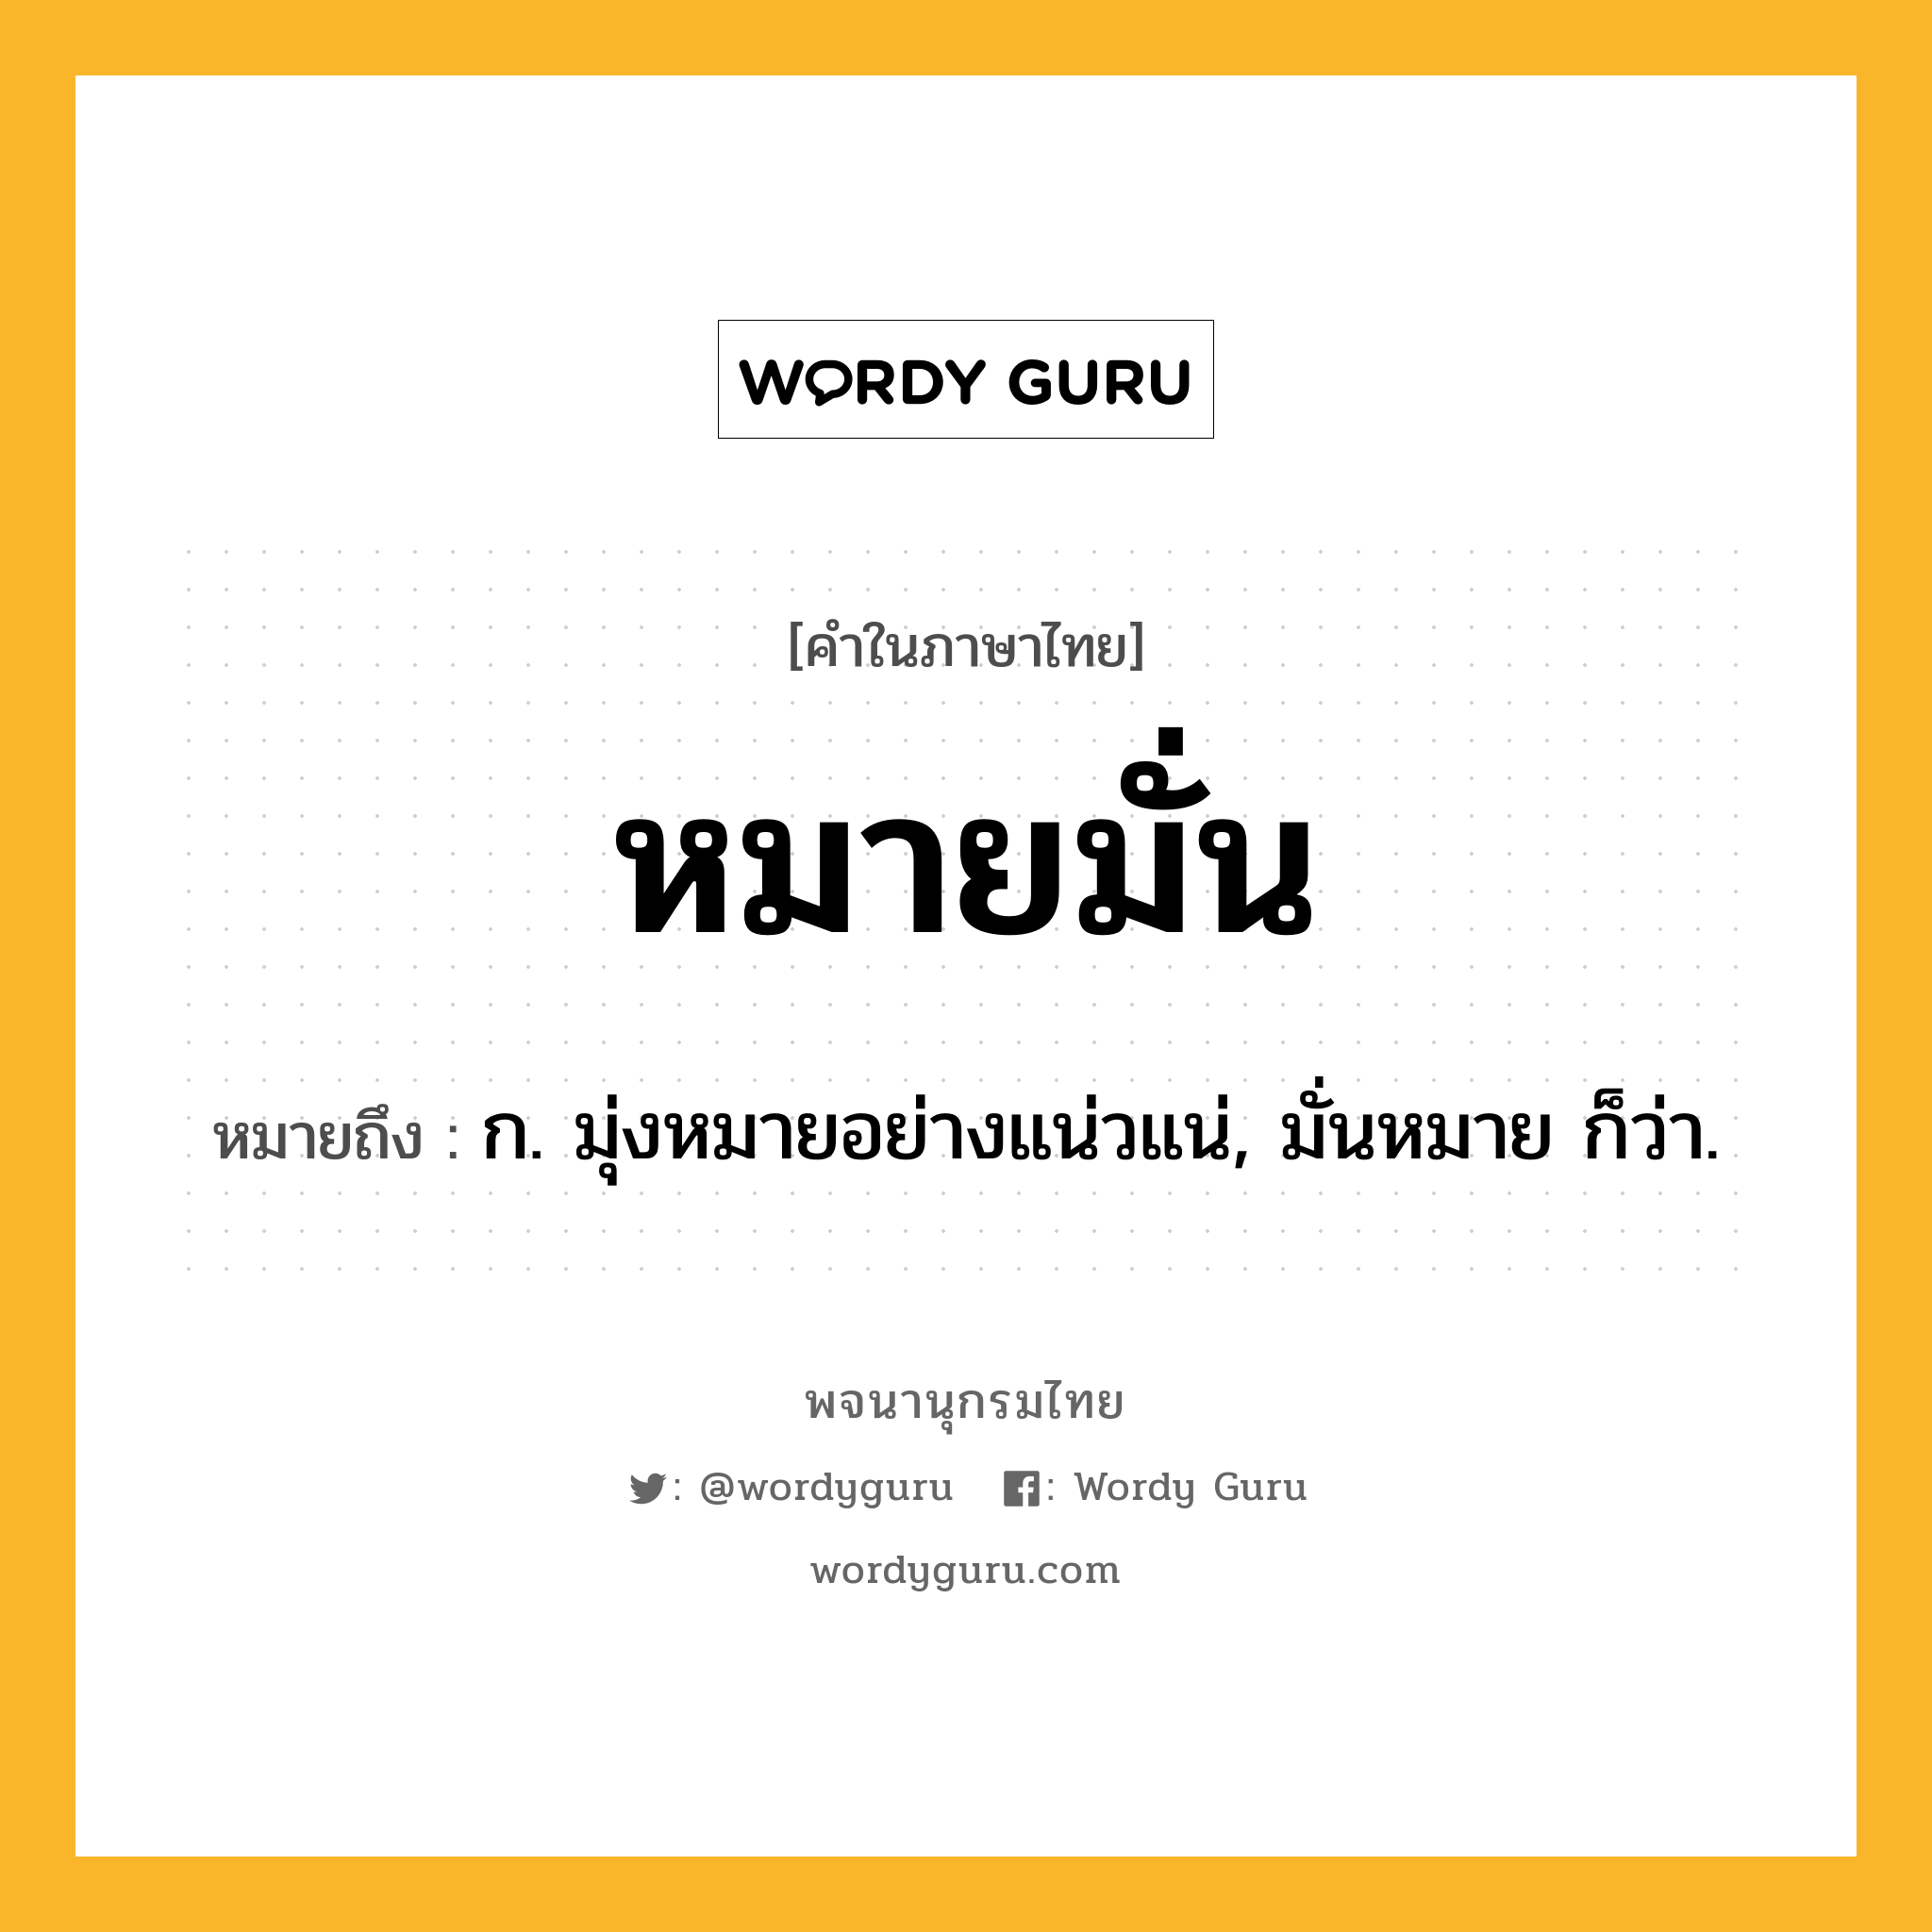 หมายมั่น หมายถึงอะไร?, คำในภาษาไทย หมายมั่น หมายถึง ก. มุ่งหมายอย่างแน่วแน่, มั่นหมาย ก็ว่า.